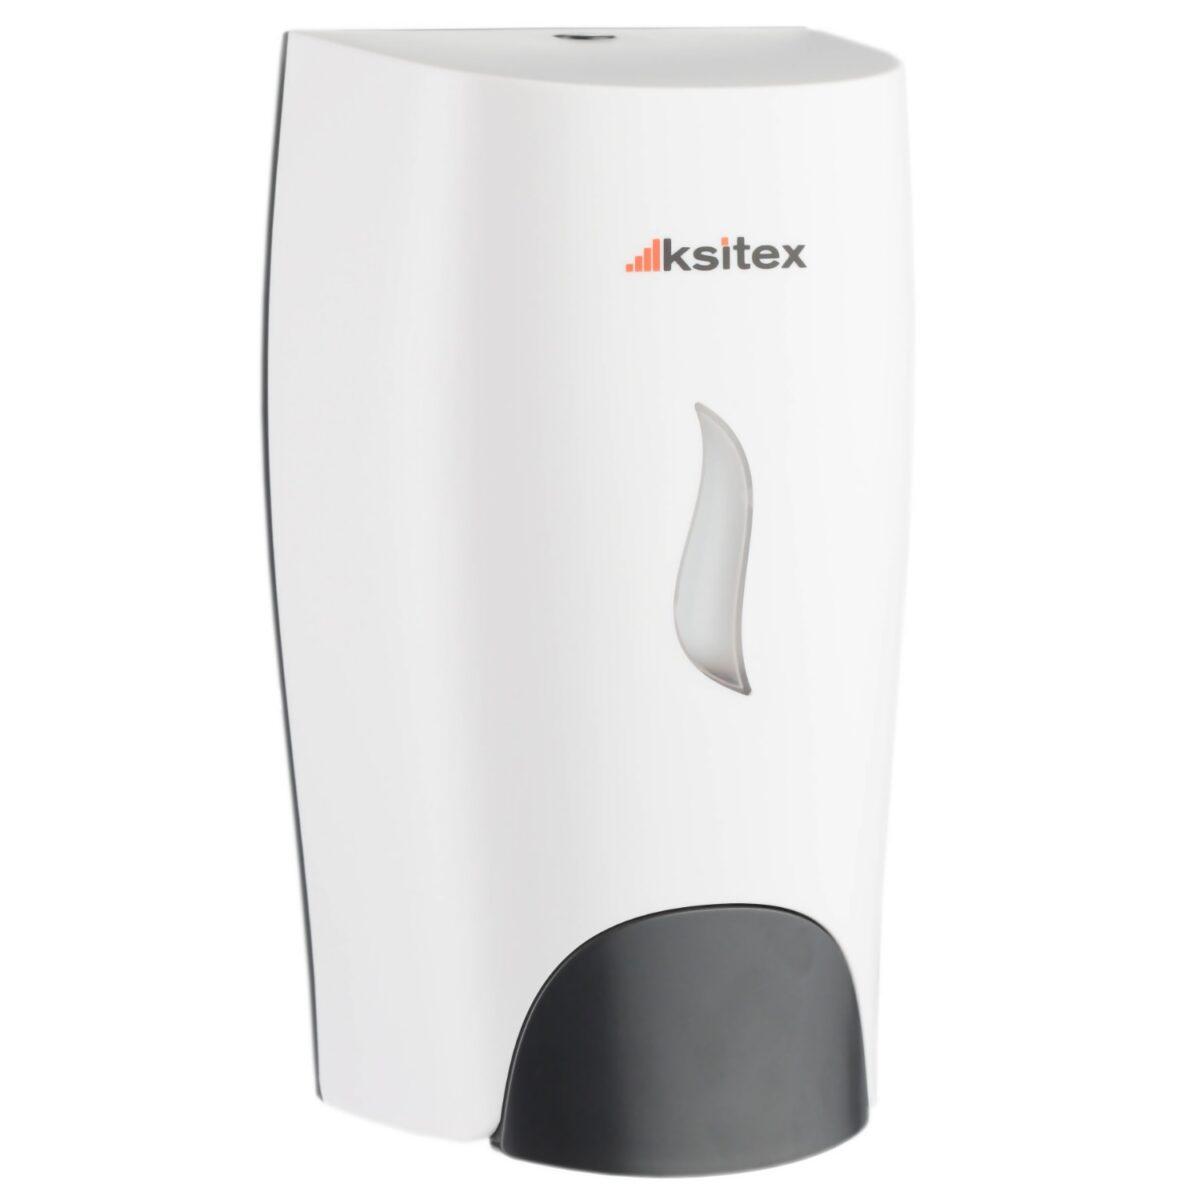 Дозатор Ksitex SD-161W для жидкого мыла / дезинфицирующих средств (капля) 1000 vk